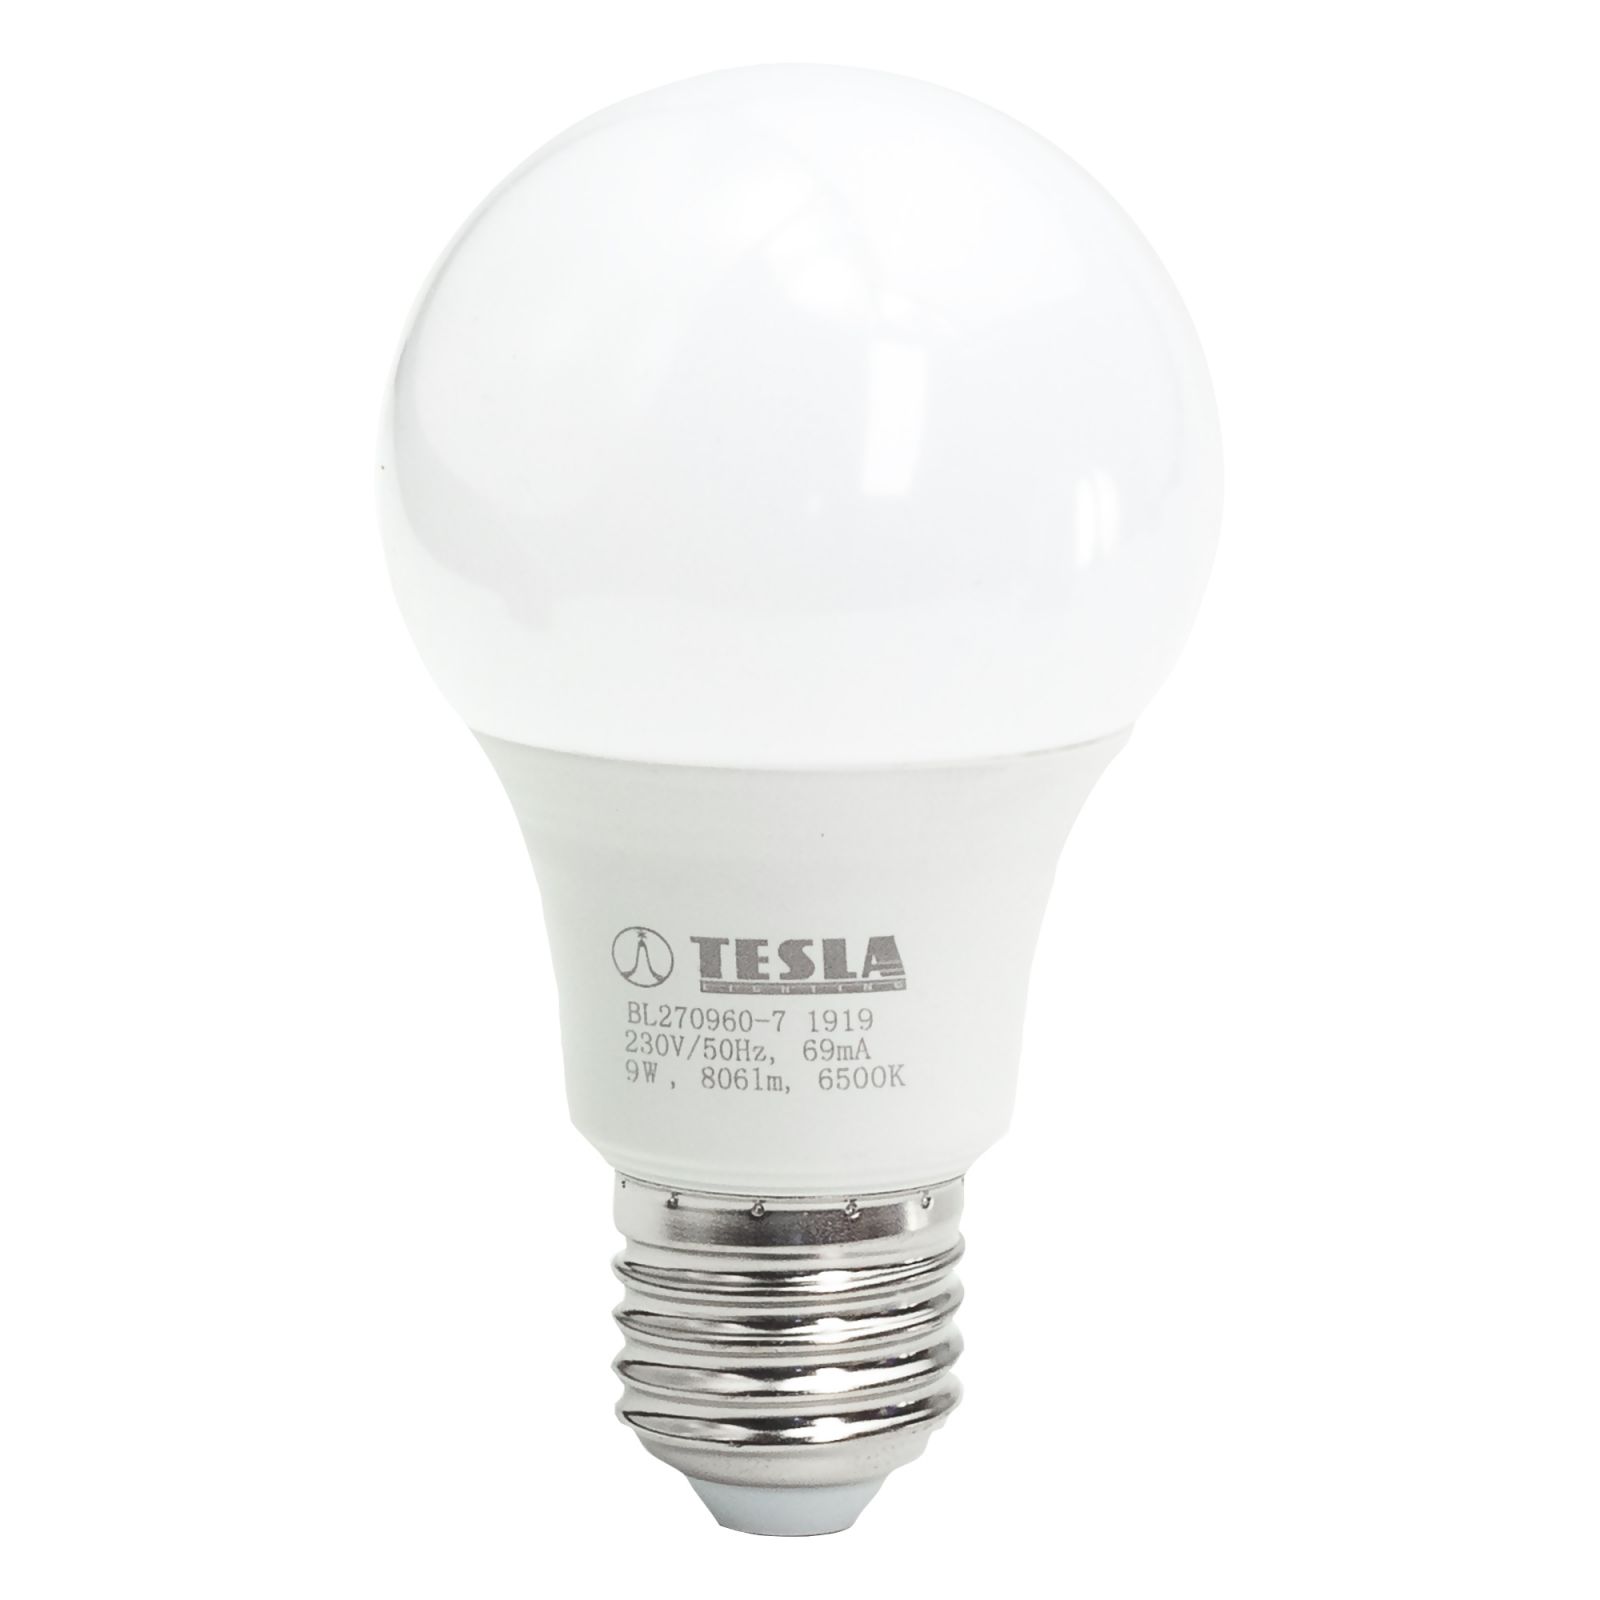 Tesla - LED BULB E27, 9W, 230V, 806lm, 6500K, 220° Tesla Lighting